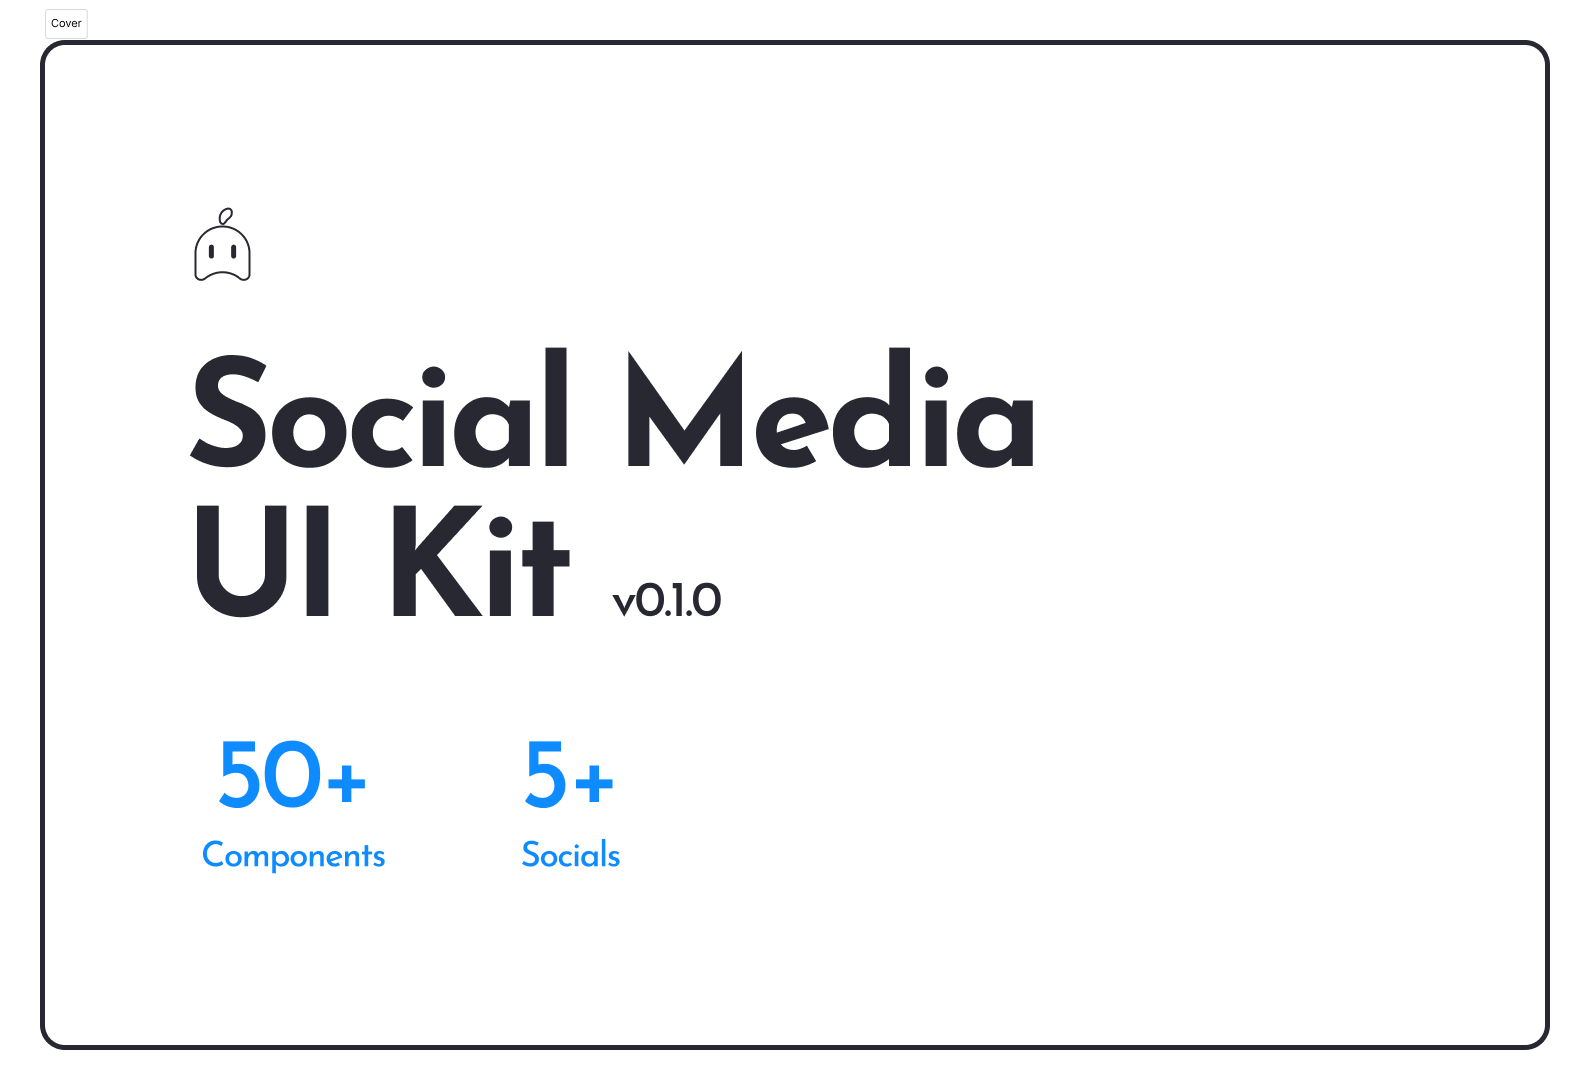 Social Media UI Kit media 1